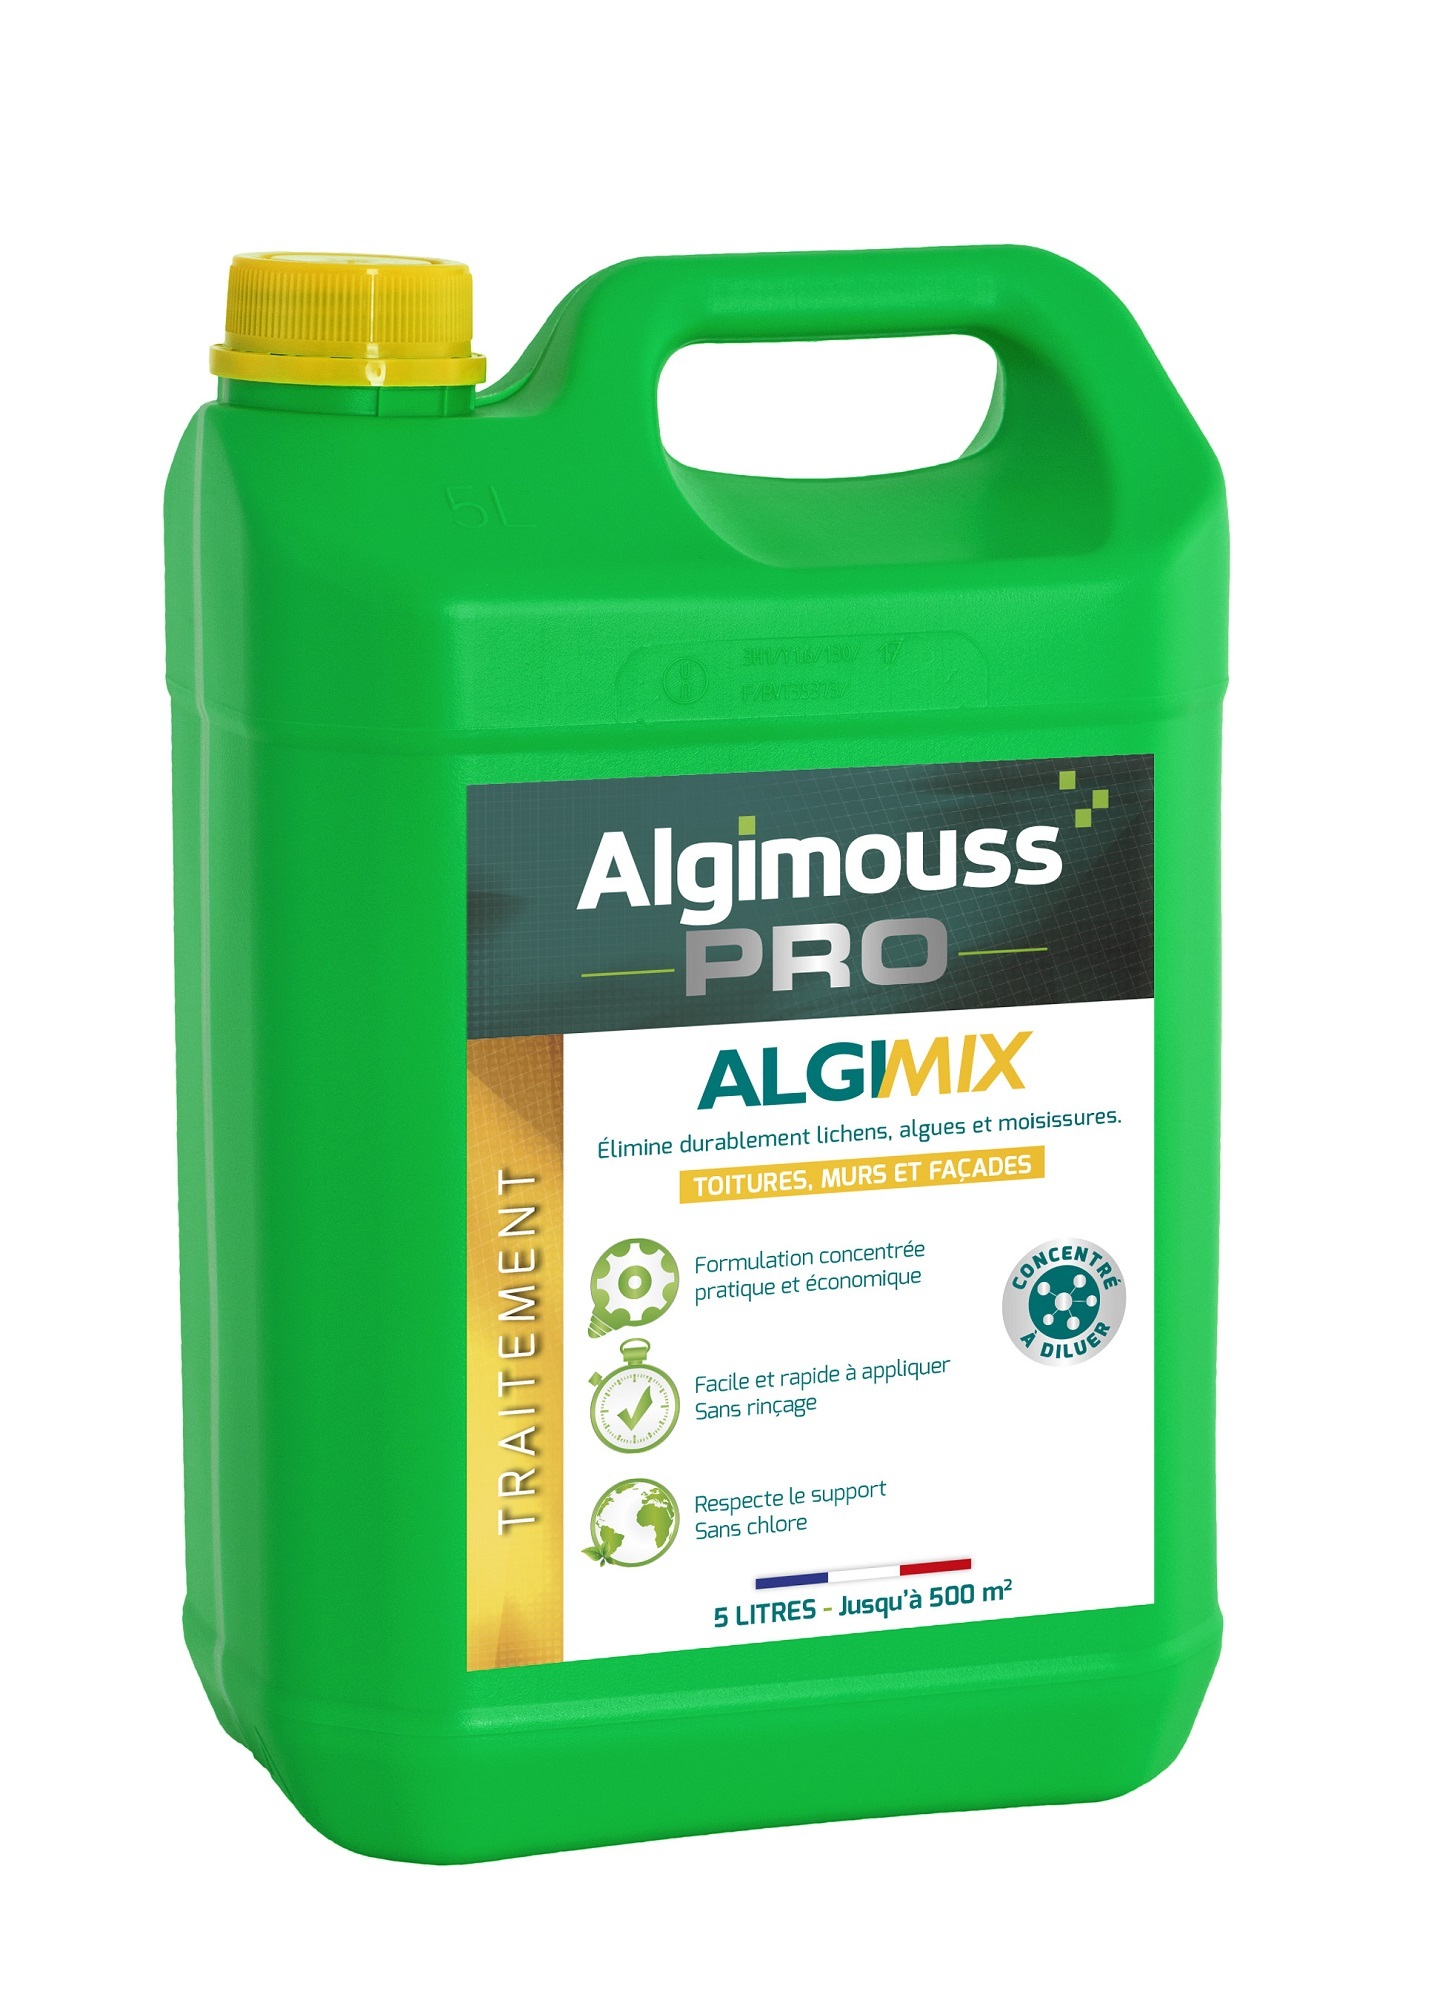 ALGIMIX 5 litres Traitement fongicide et imperméabilisant - ALGIMOUSS - 014002